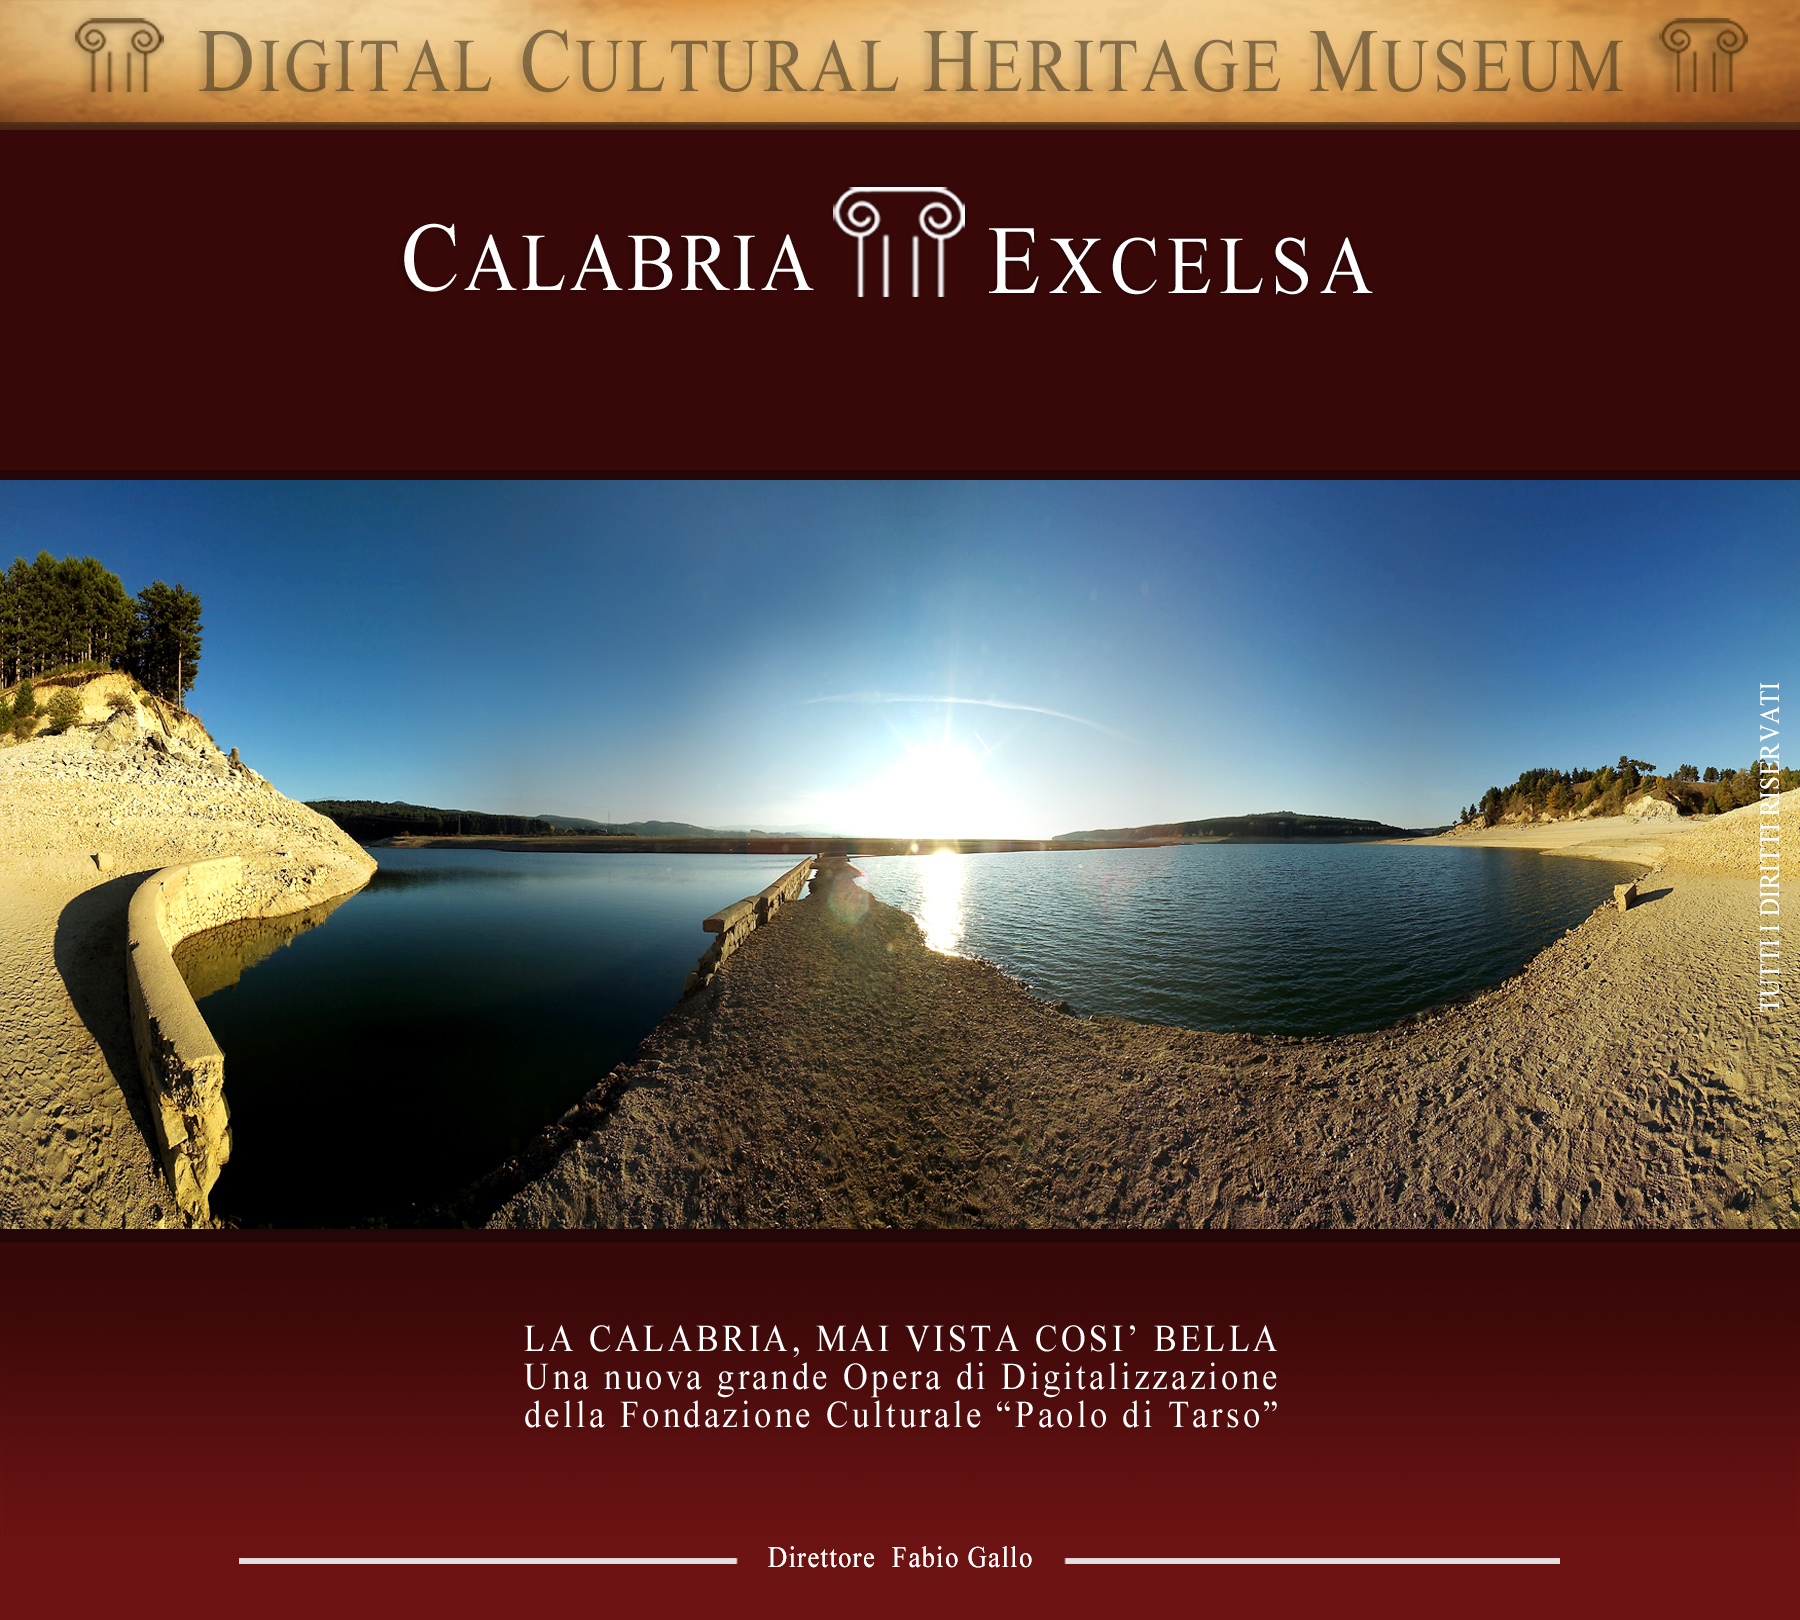 Calabria Excelsa-archeologia-arte-mare-monti-laghiturismo-fotografia-cinema-teato-food-wine-vino-dieta mediterranea